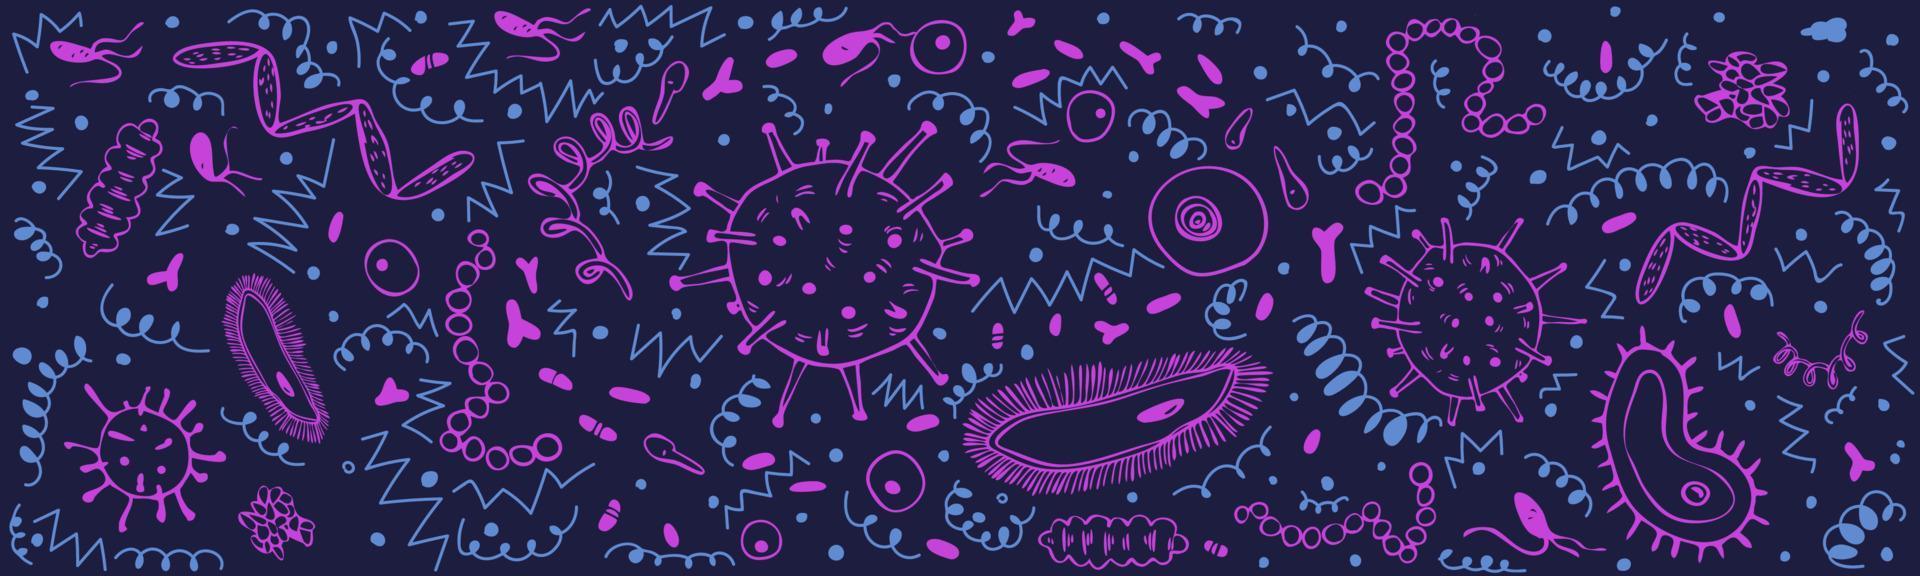 horizontales Banner mit rosa und blauen Mikroorganismen kritzeln auf dunkelblauem Hintergrund. Vektorillustration einer Vielzahl von Bazillen und Bakterien, Viren und Streptokokken in einer chaotischen Anordnung. vektor